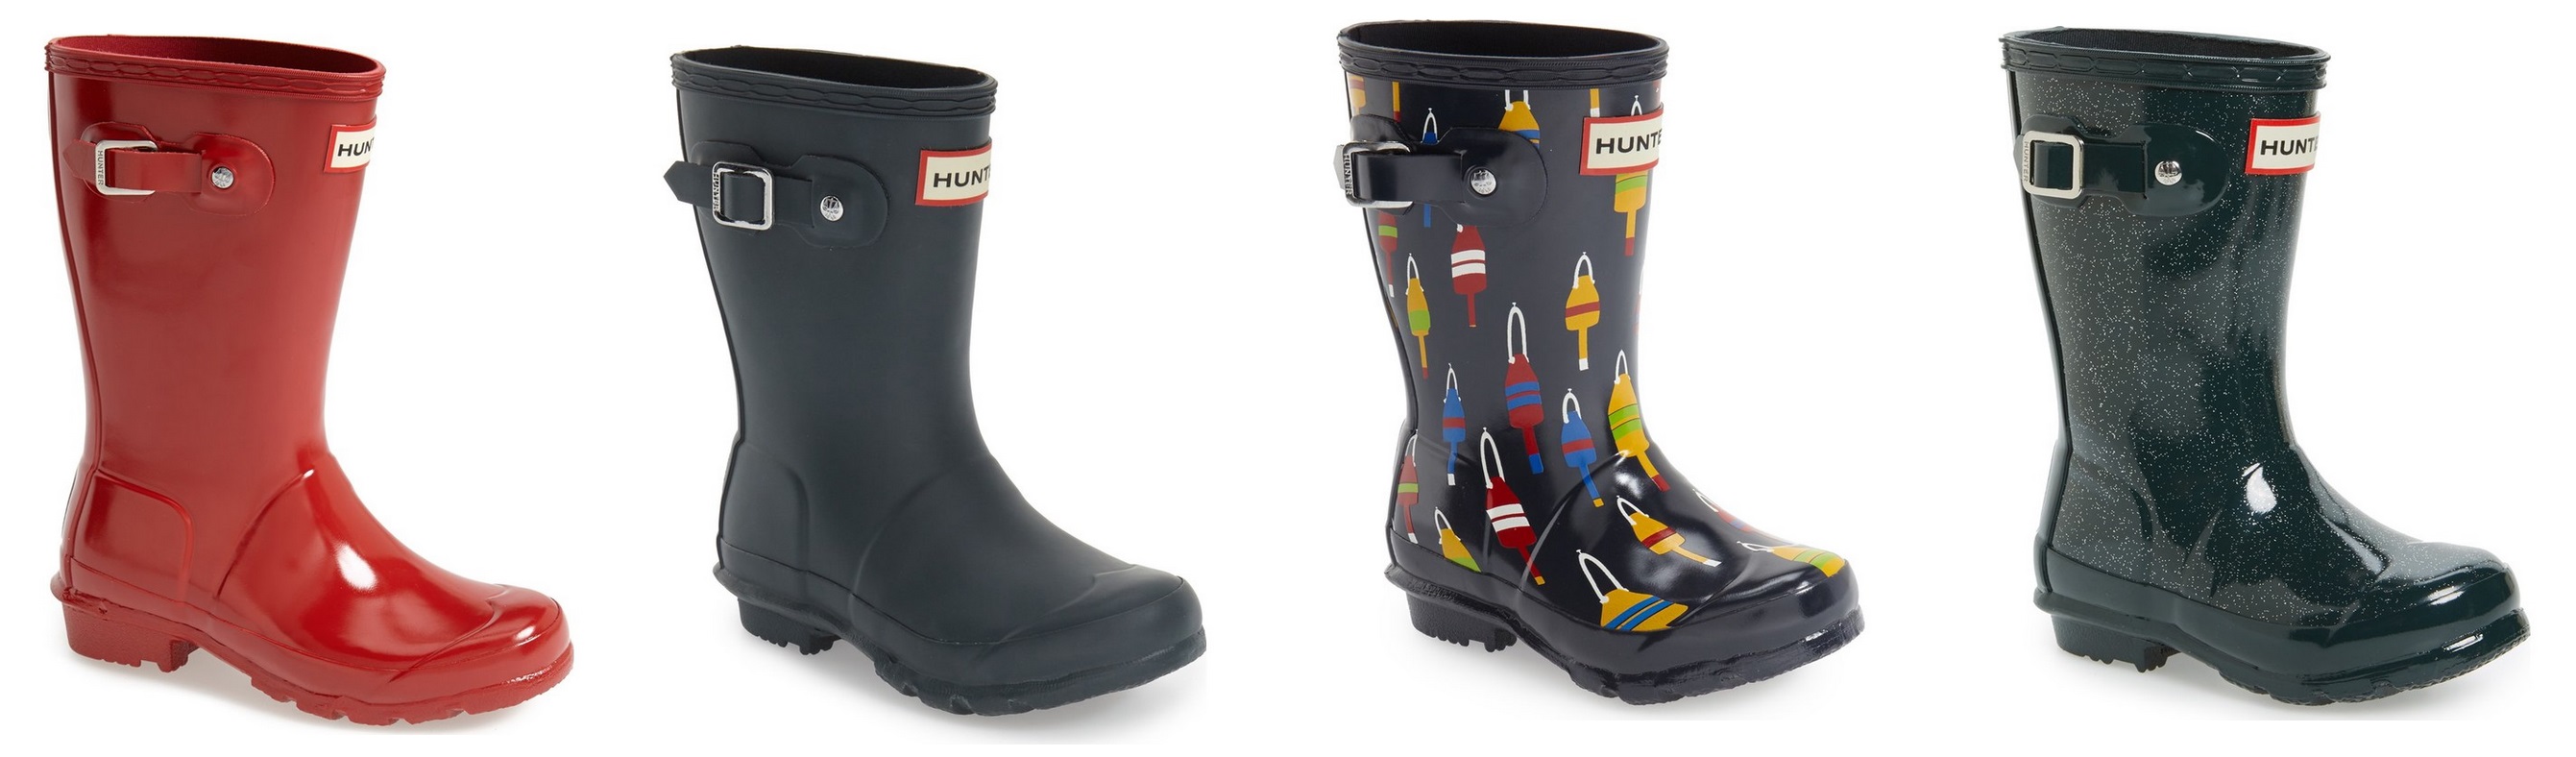 kids hunter rain boots